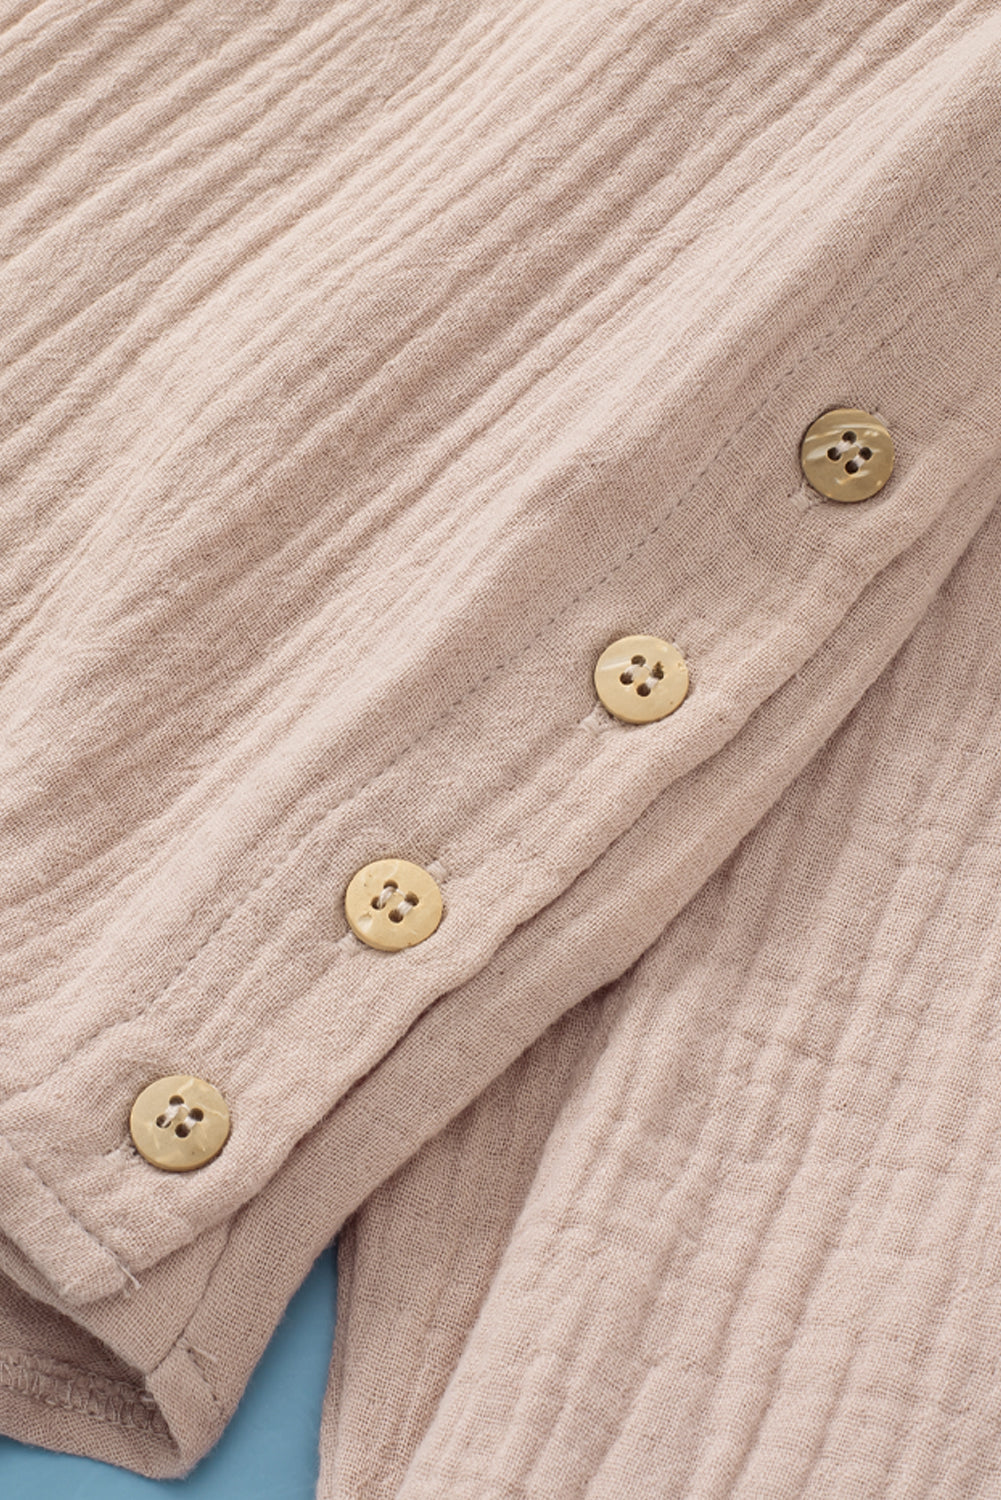 Khakifarbenes Hemd mit geknöpftem Umlegekragen und Tasche in Knitteroptik